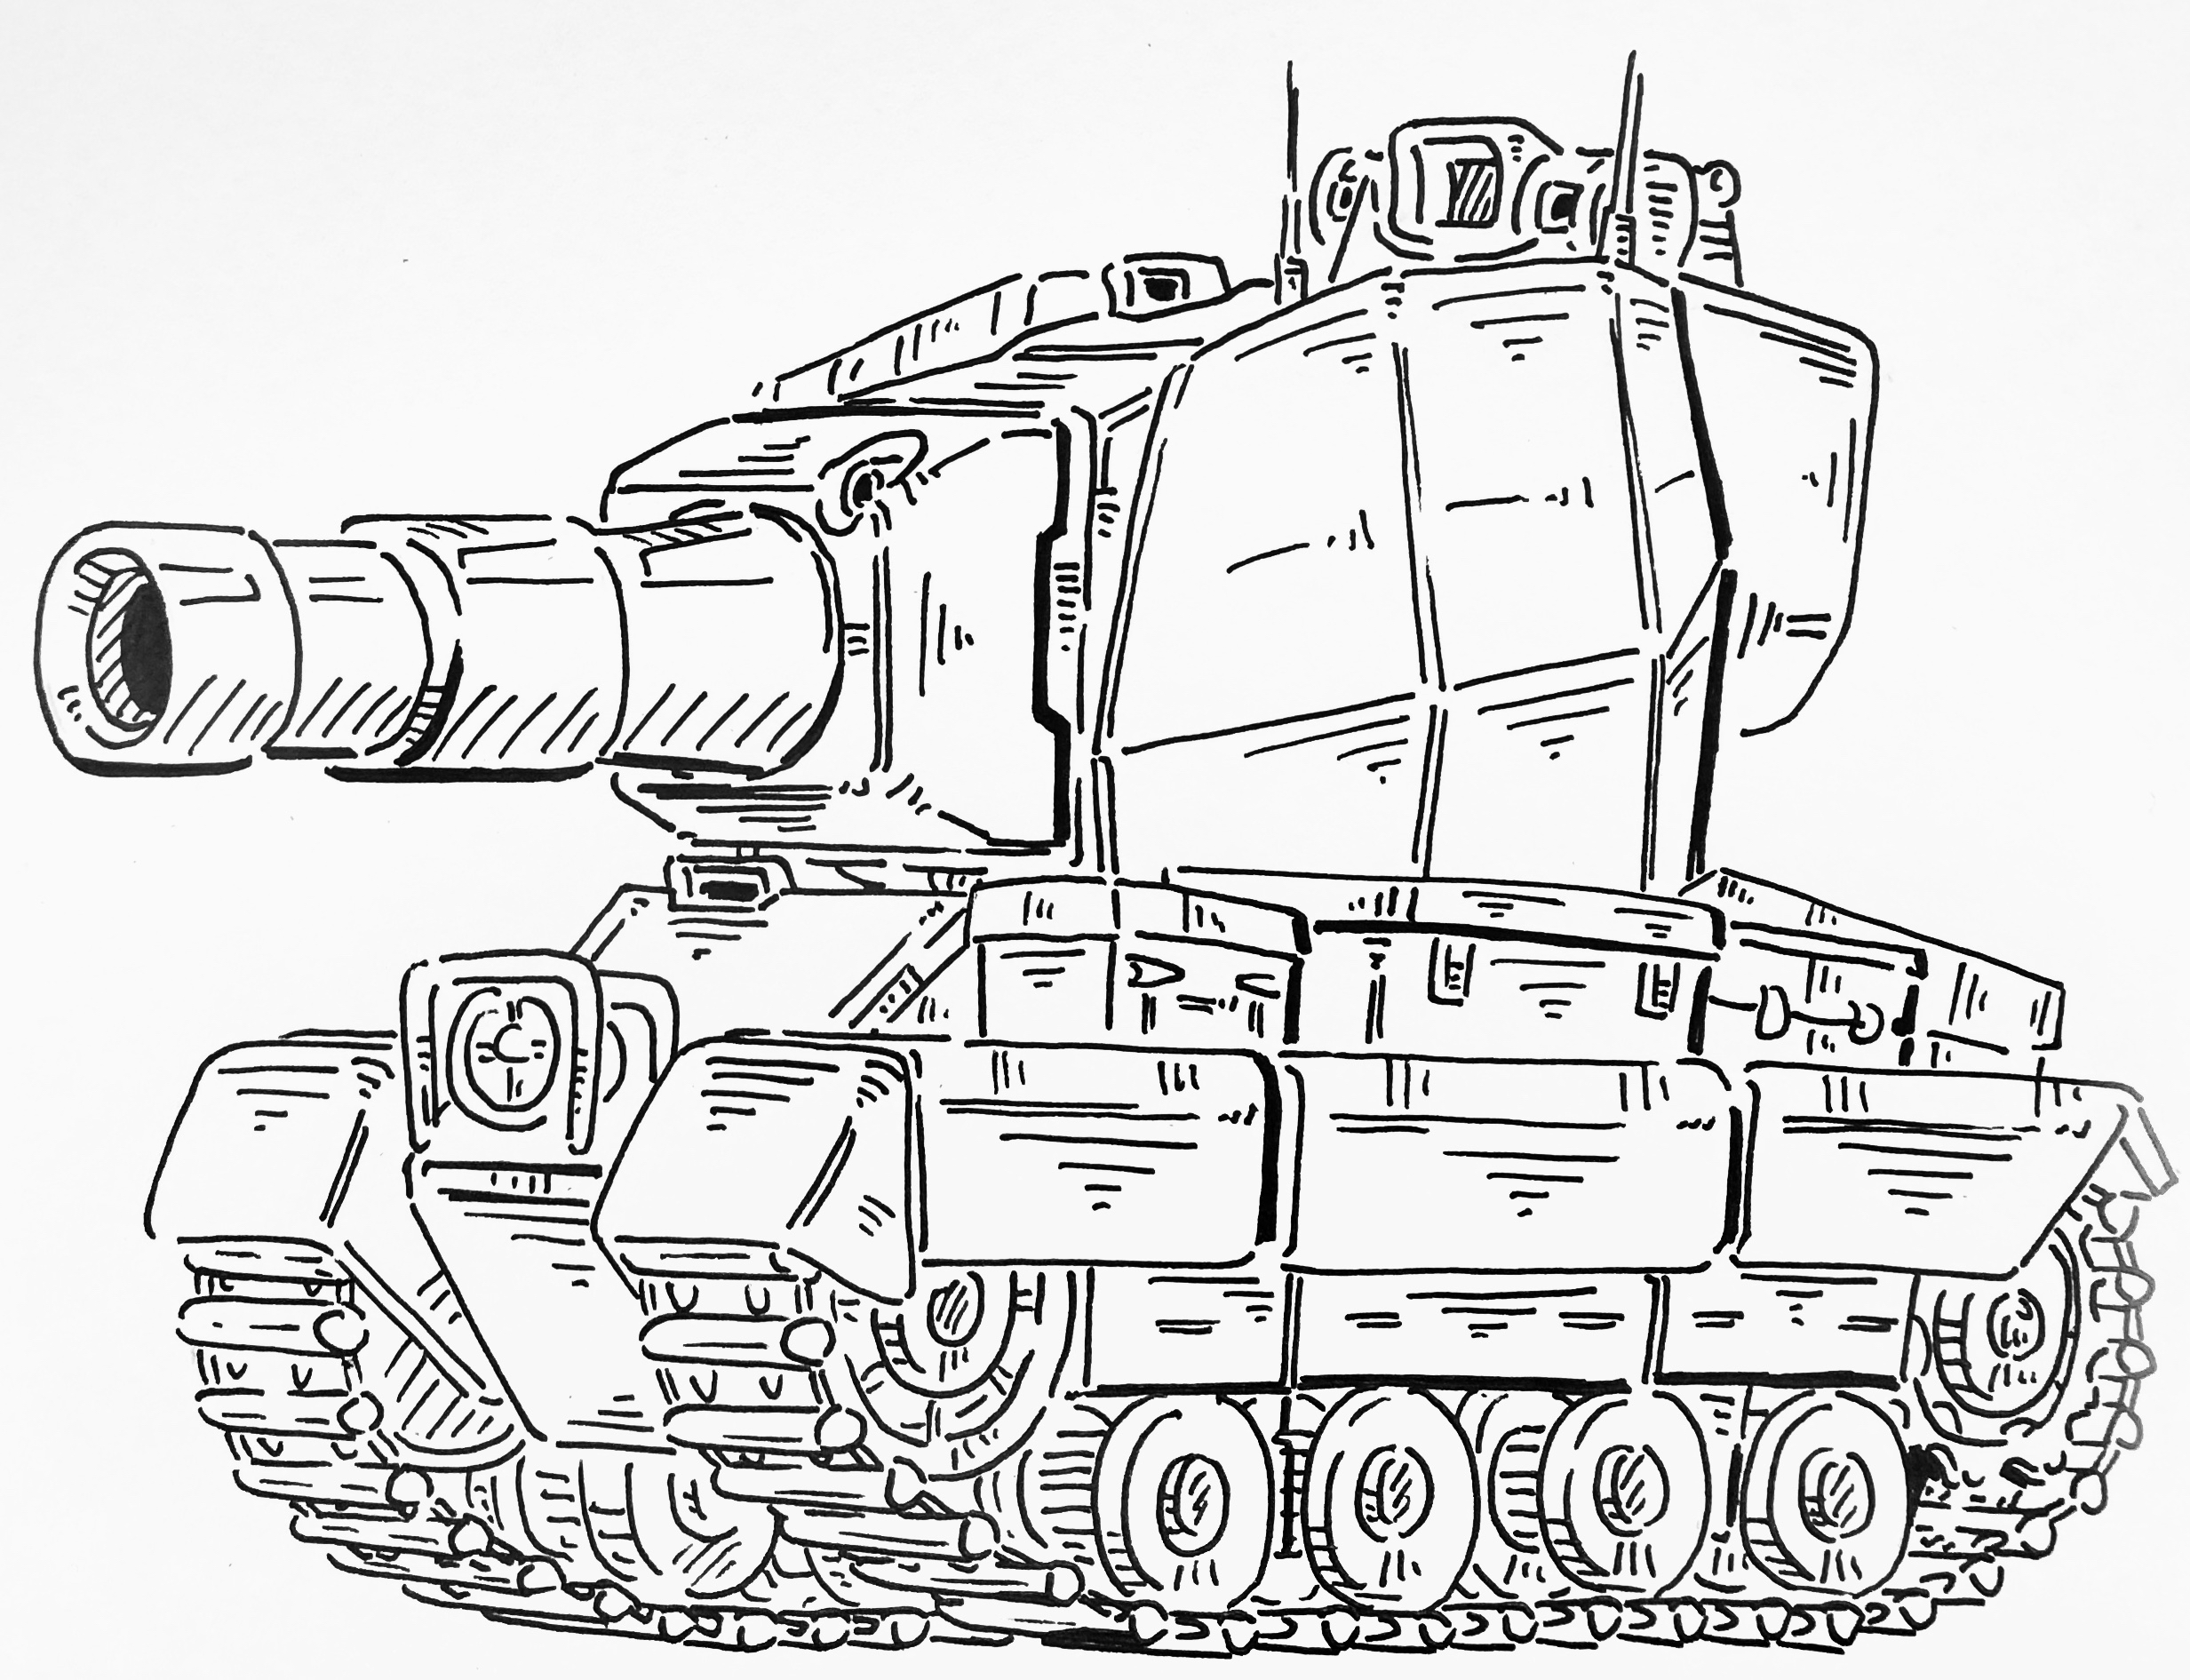 康威 如果有想看的坦克或者装甲车【半履带,轮式】都可以发到评论区